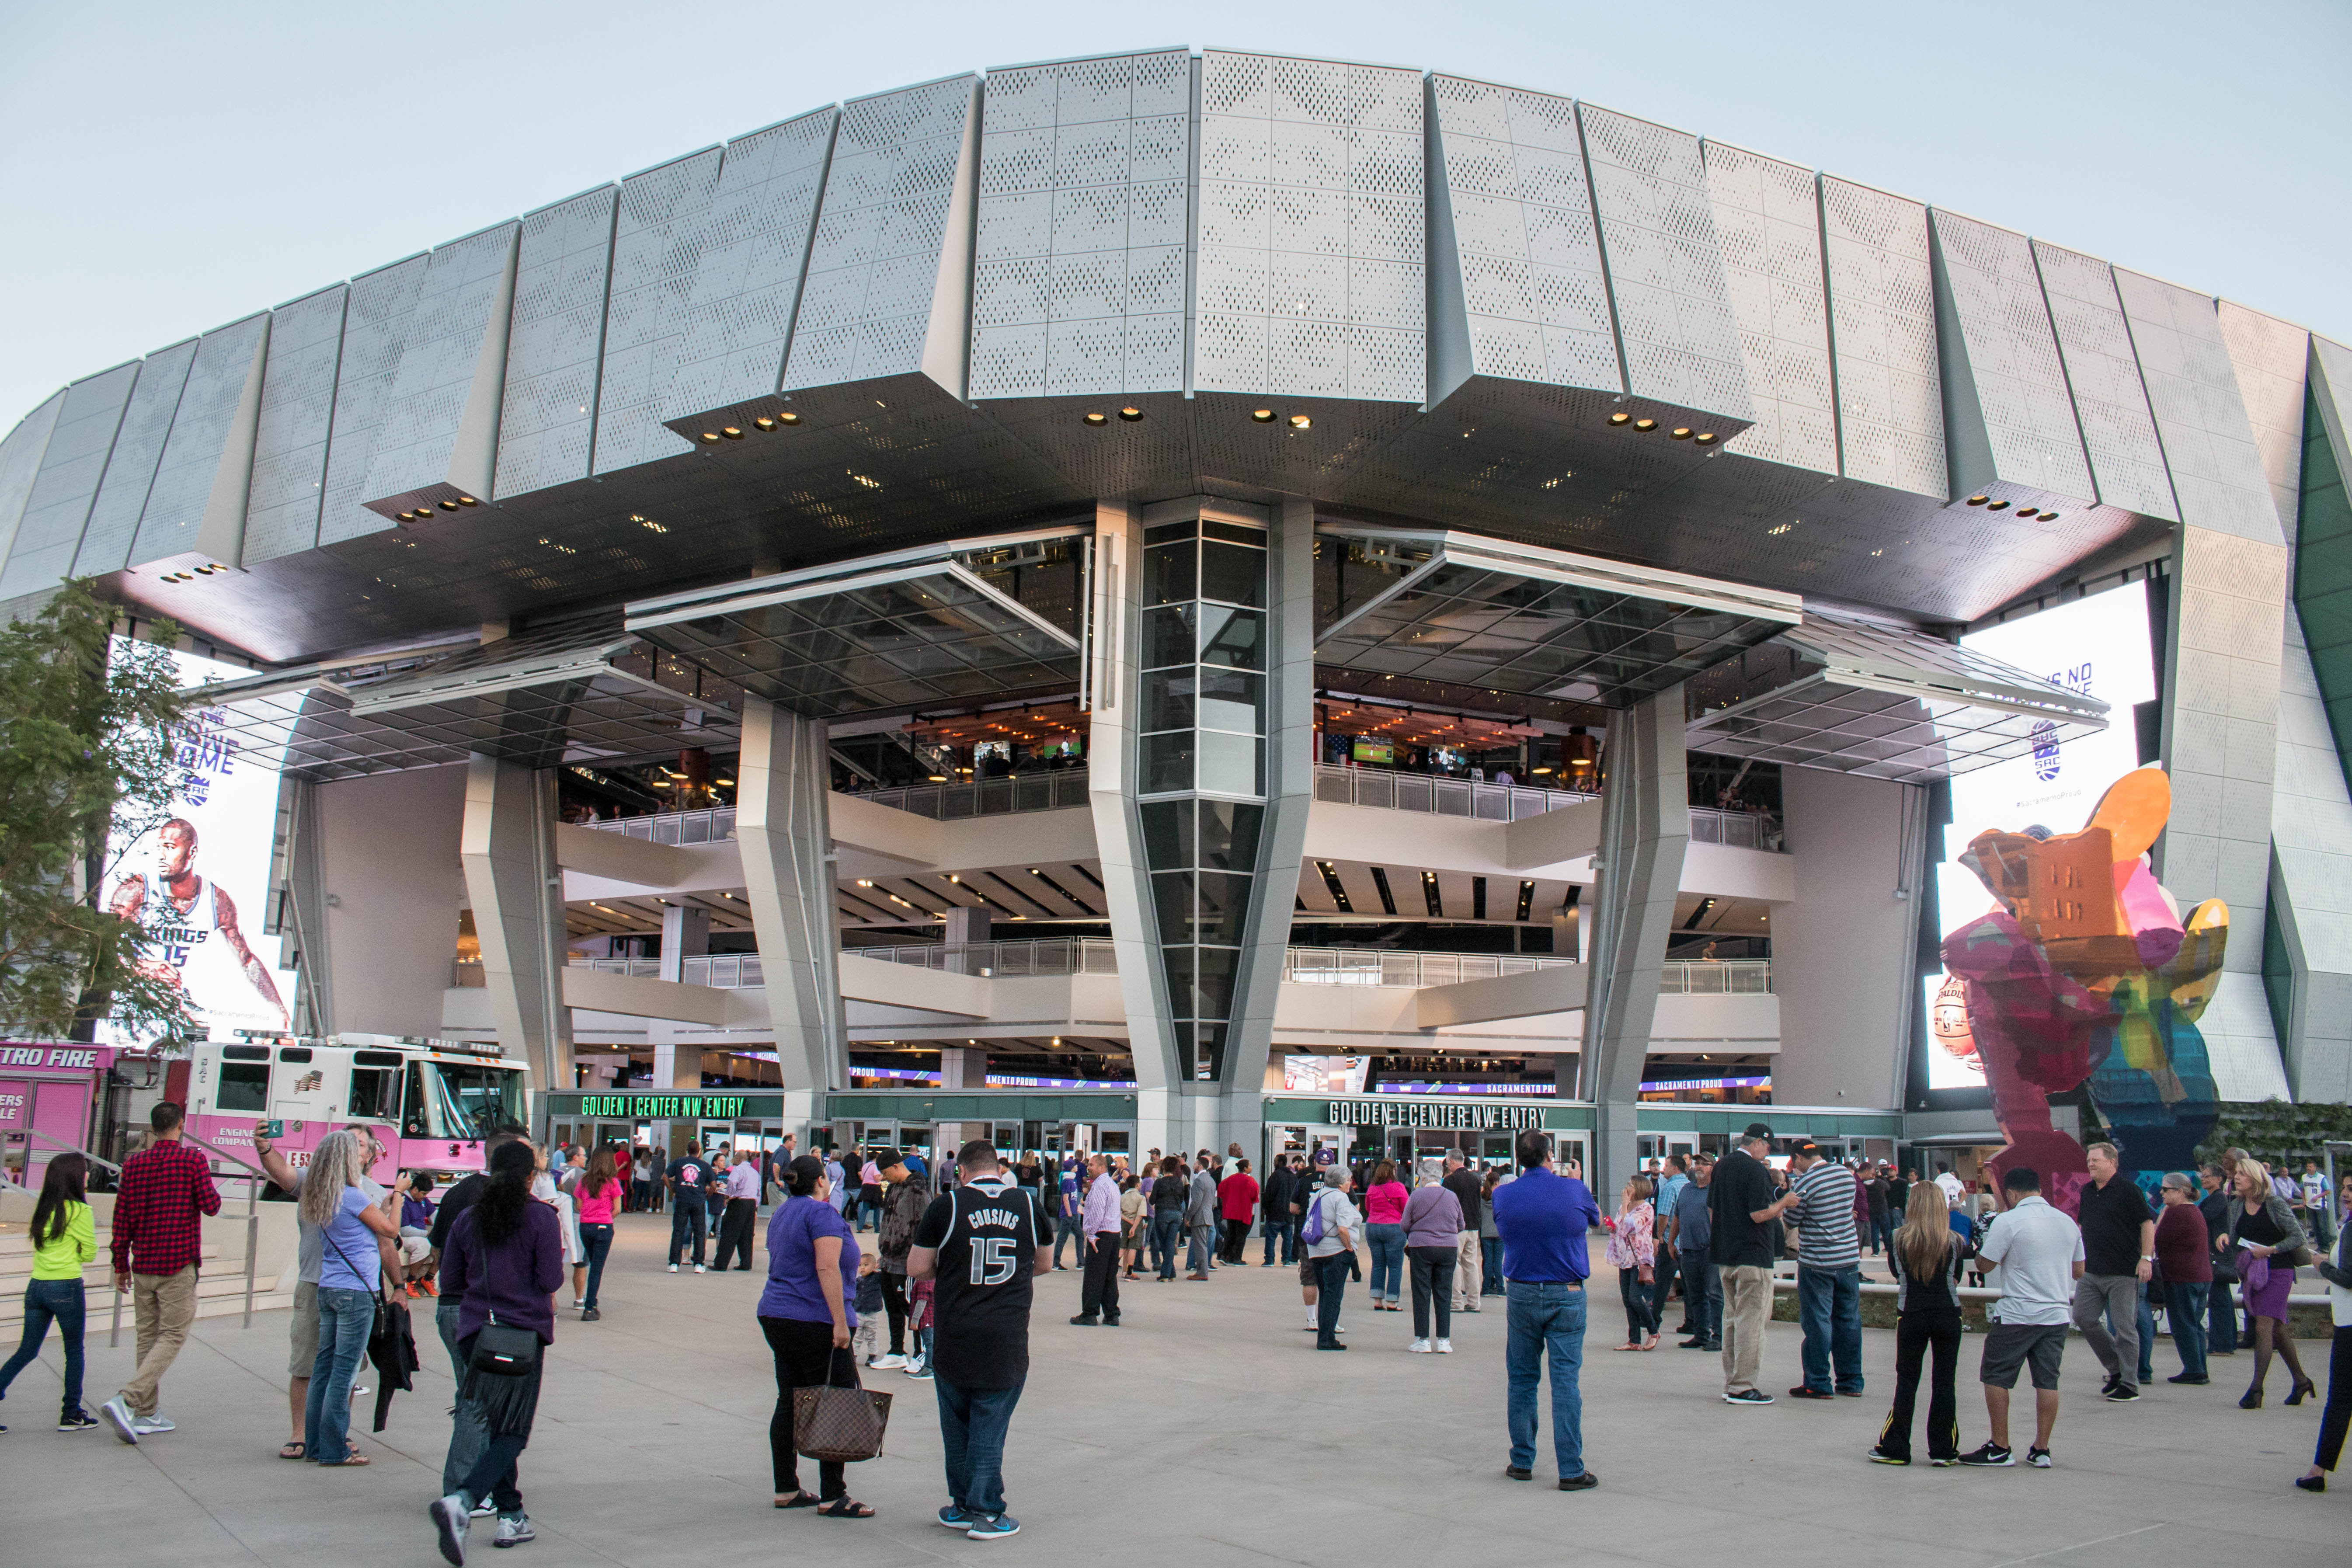 Golden 1 Center: Sacramento arena guide for 2023